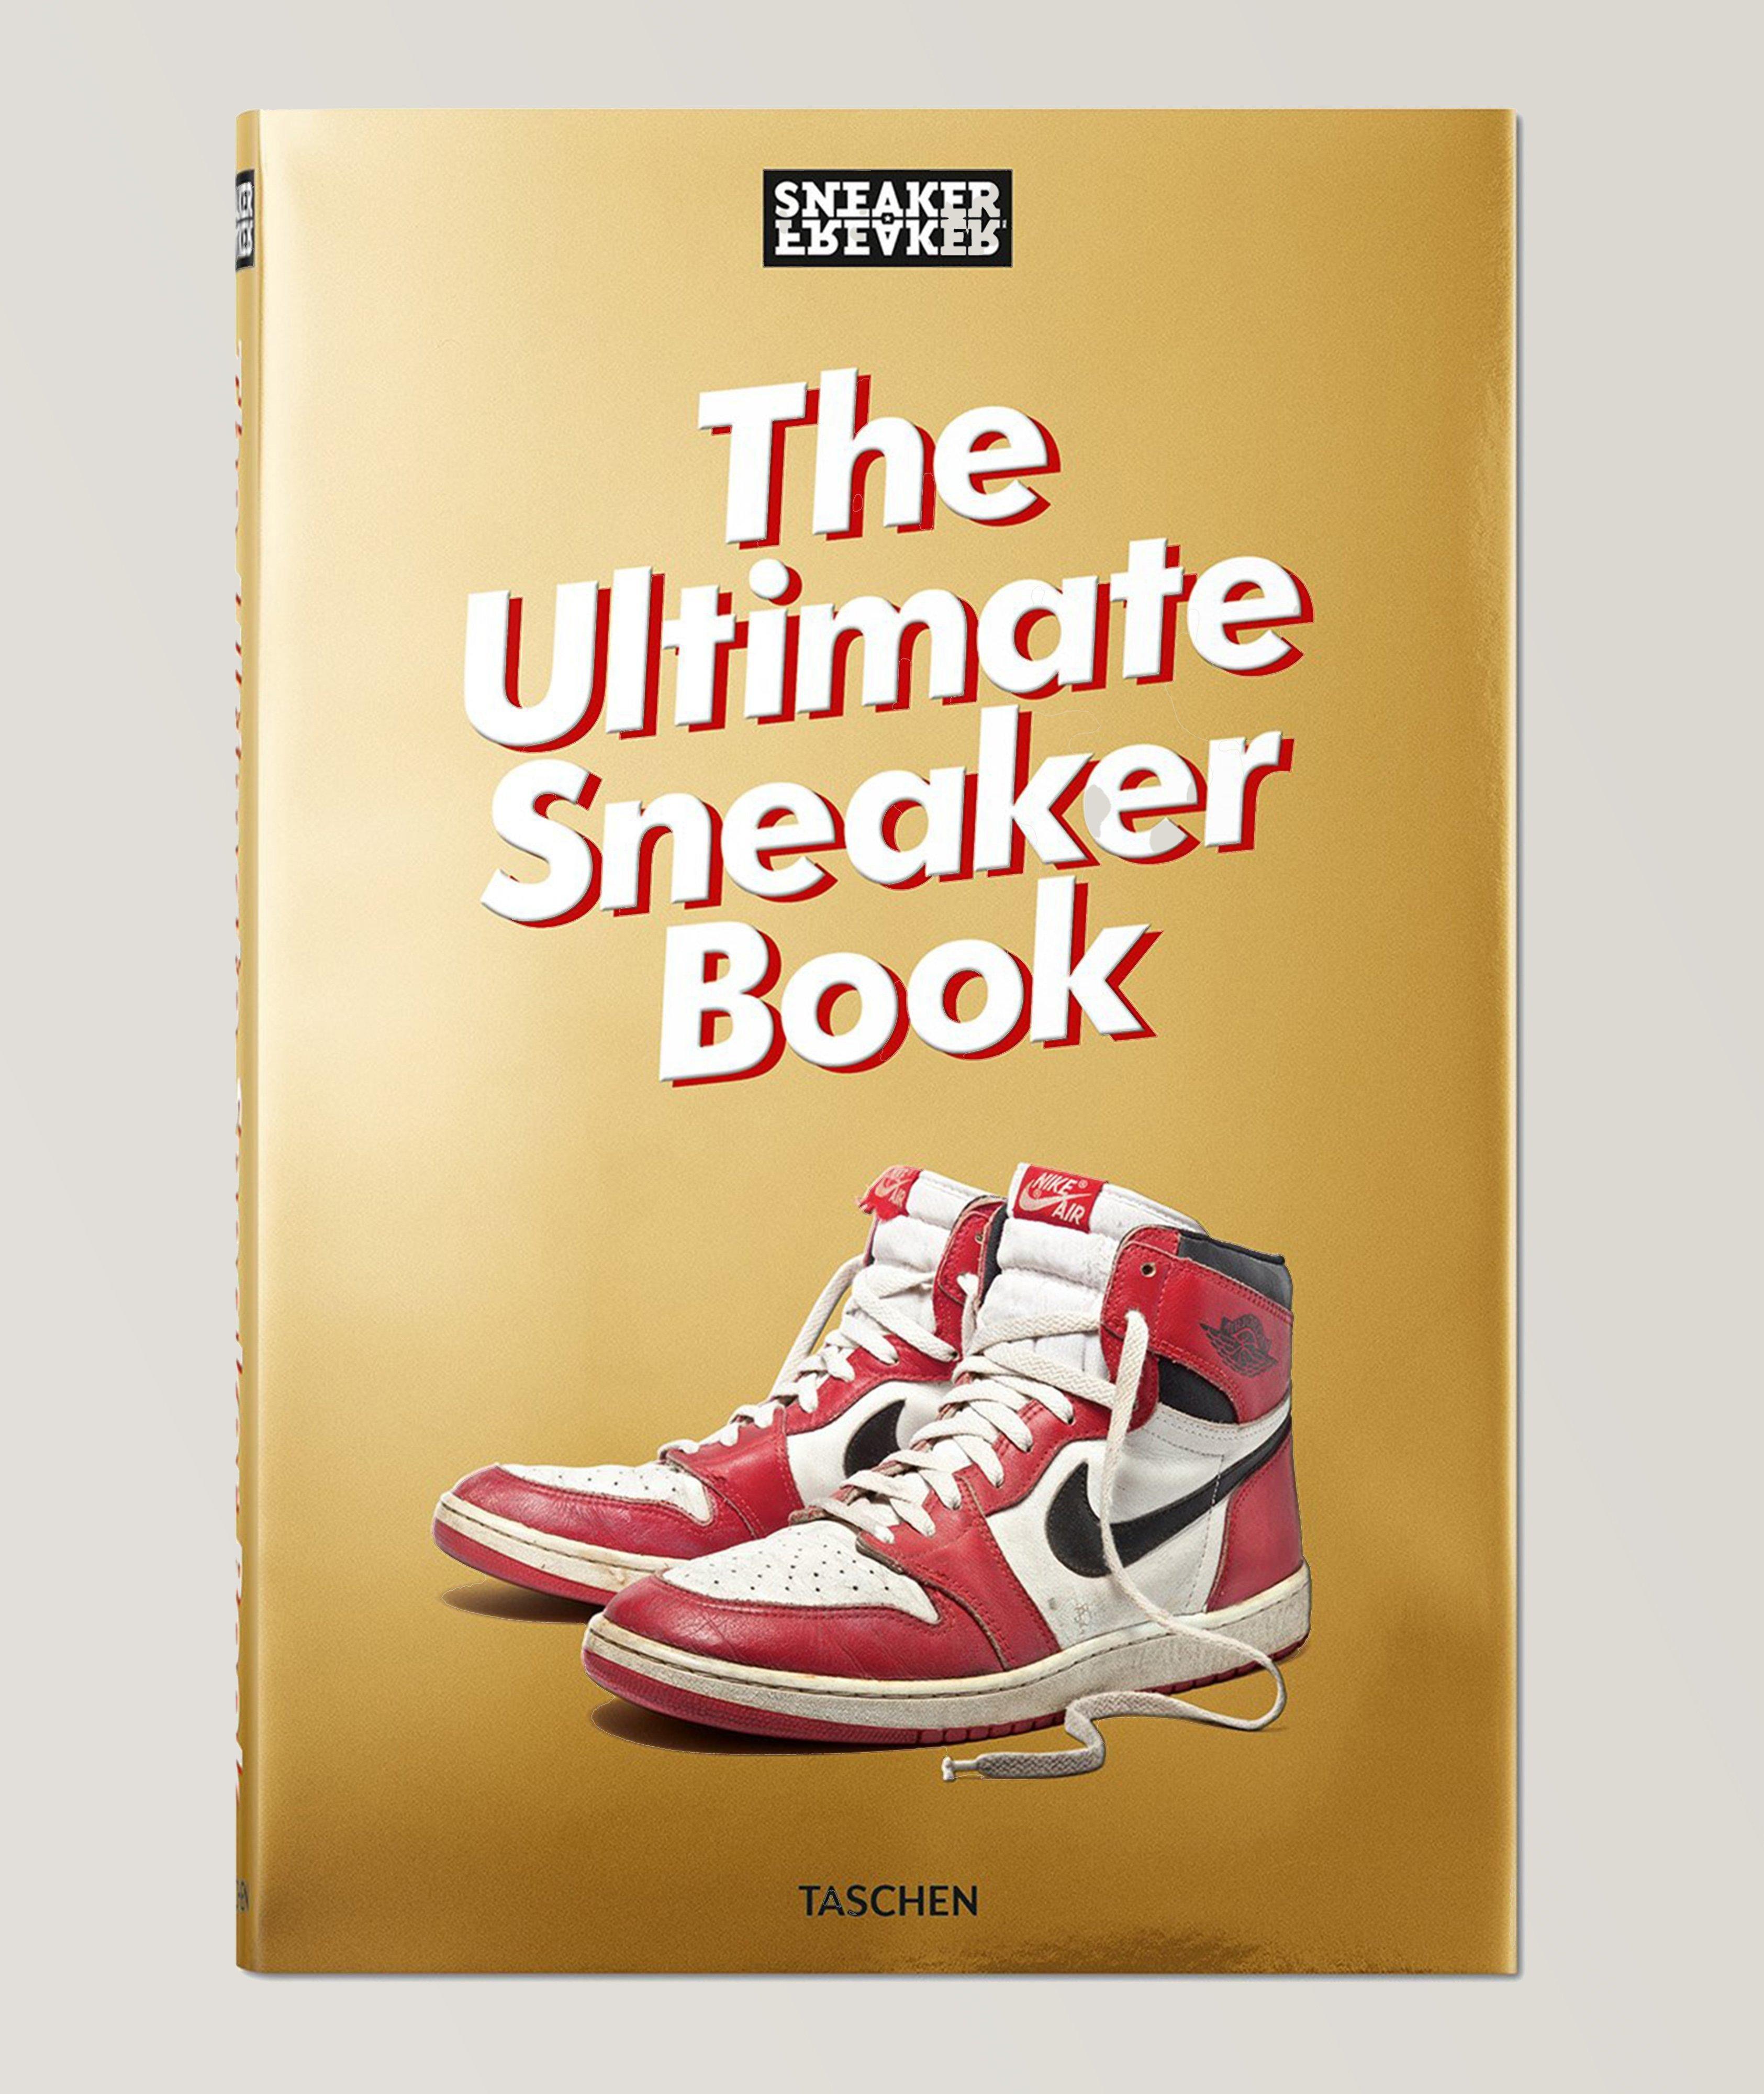 Taschen Livre « Sneaker Freaker : The Ultimate Sneaker Book »